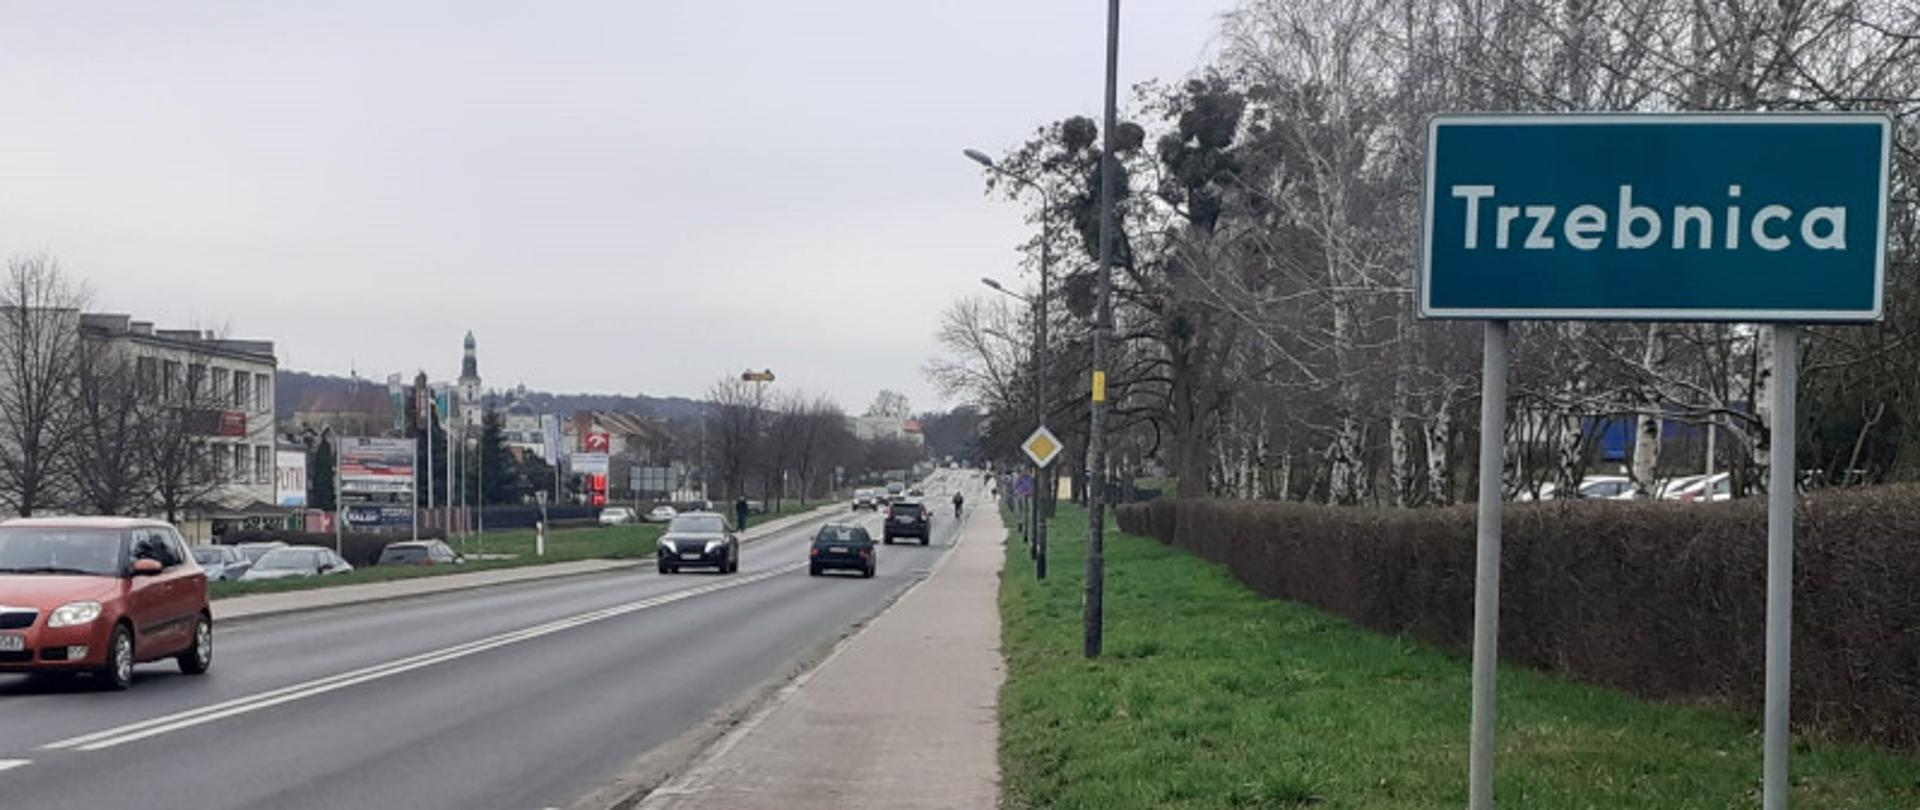 Na zdjęciu widać drogę krajową nr 15 w Trzebnicy